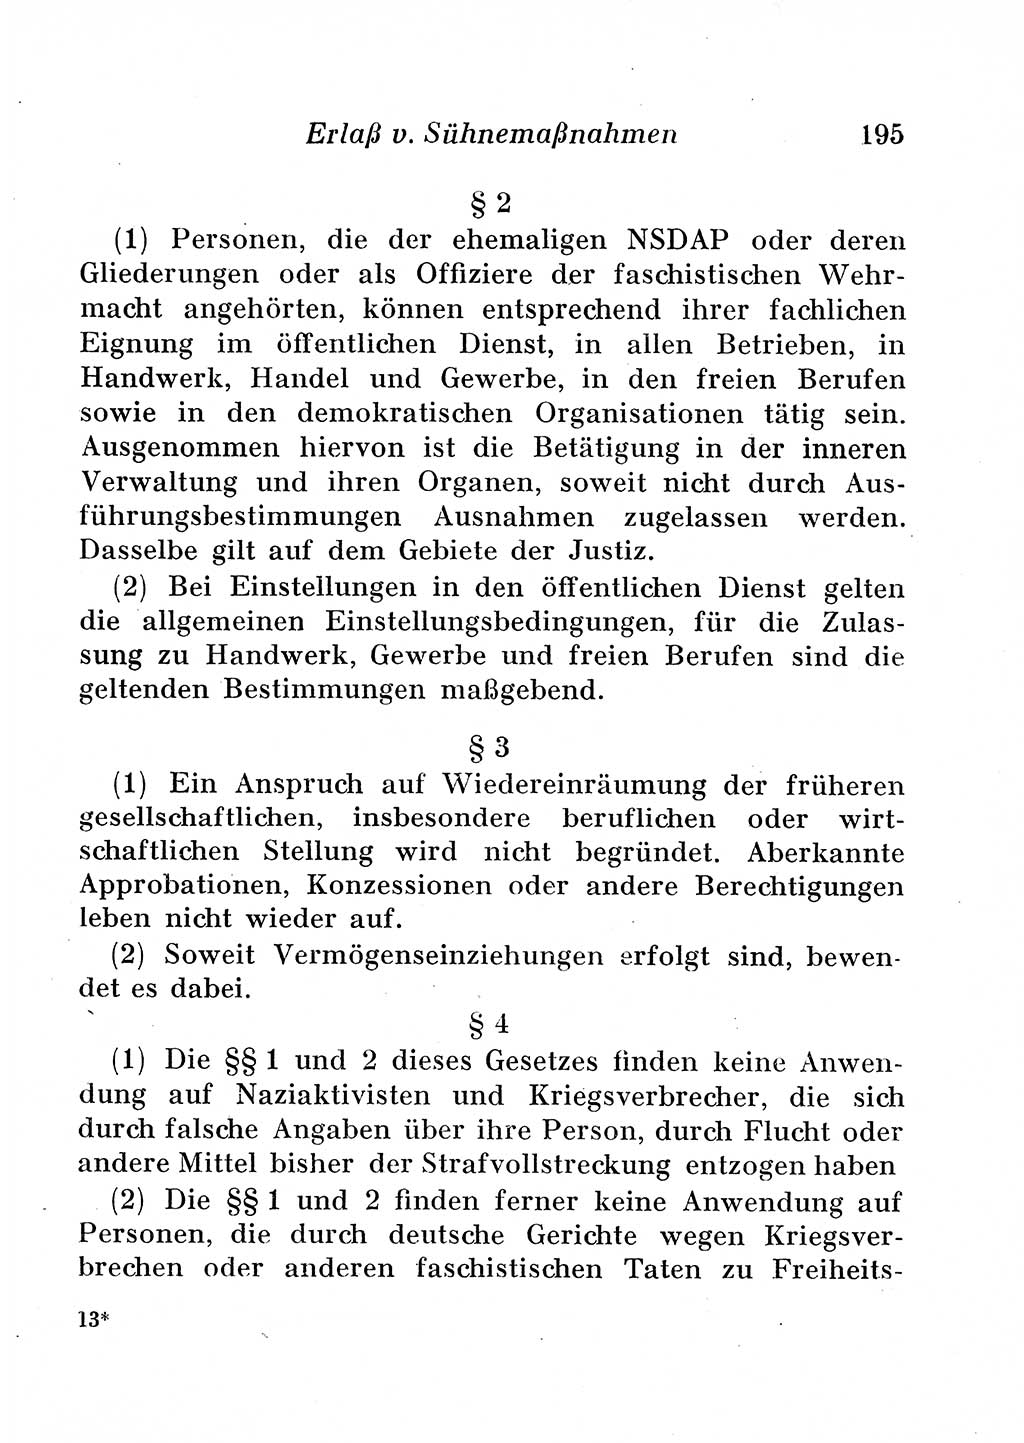 Staats- und verwaltungsrechtliche Gesetze der Deutschen Demokratischen Republik (DDR) 1958, Seite 195 (StVerwR Ges. DDR 1958, S. 195)